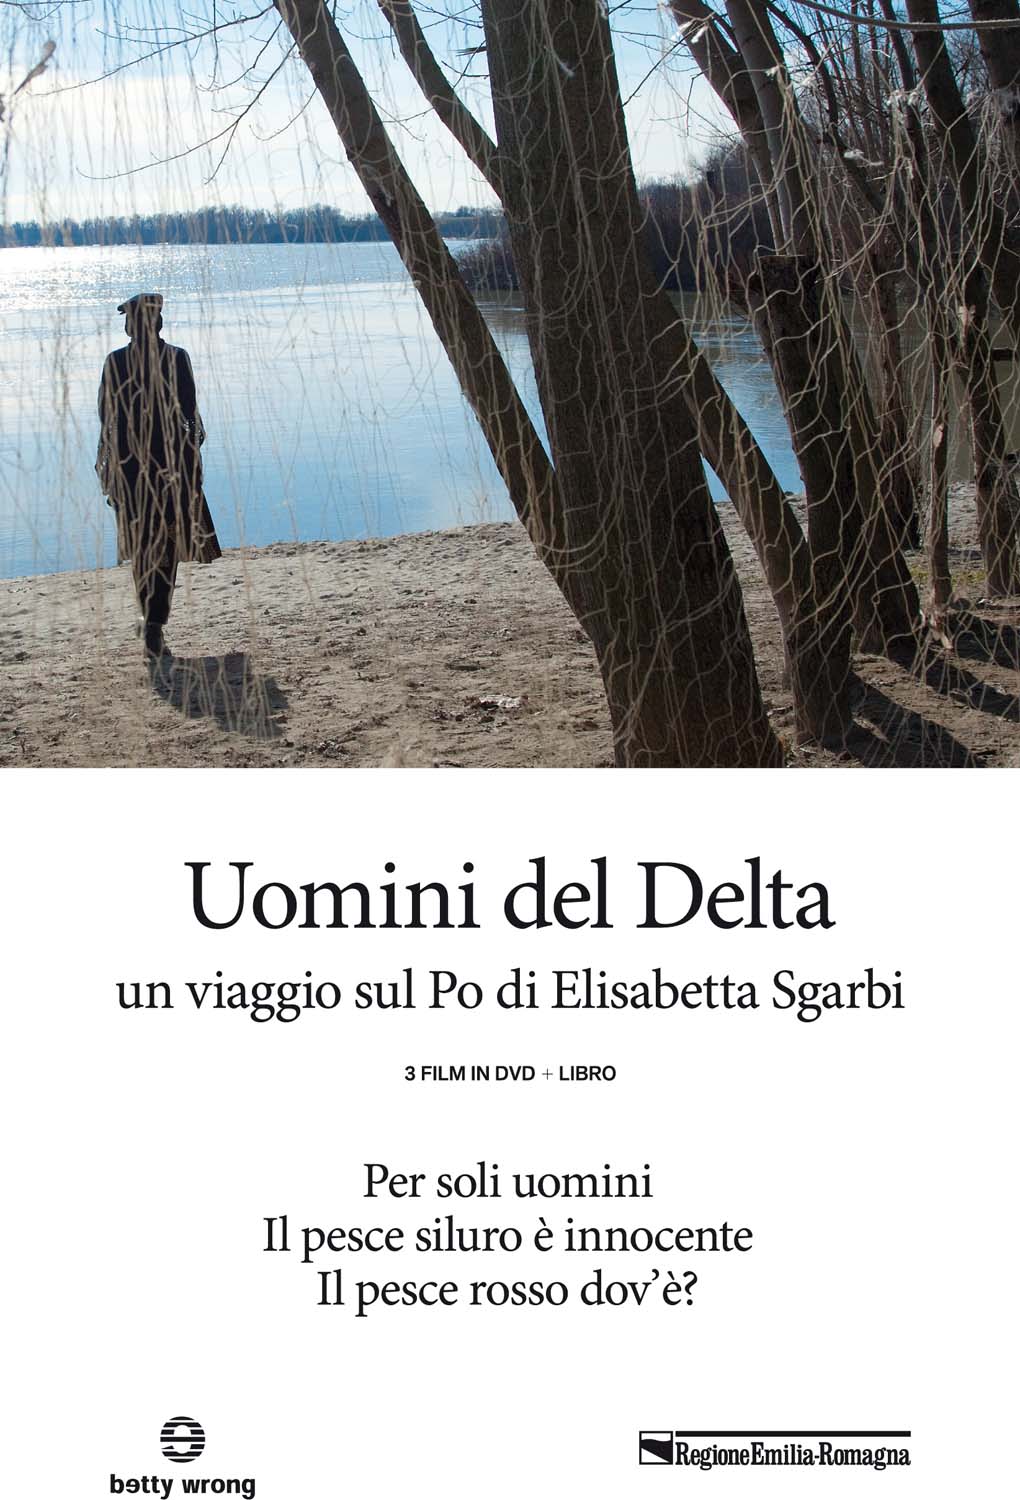 Dvd Uomini Del Delta (3 Dvd+Libro) NUOVO SIGILLATO, EDIZIONE DEL 04/10/2017 SUBITO DISPONIBILE